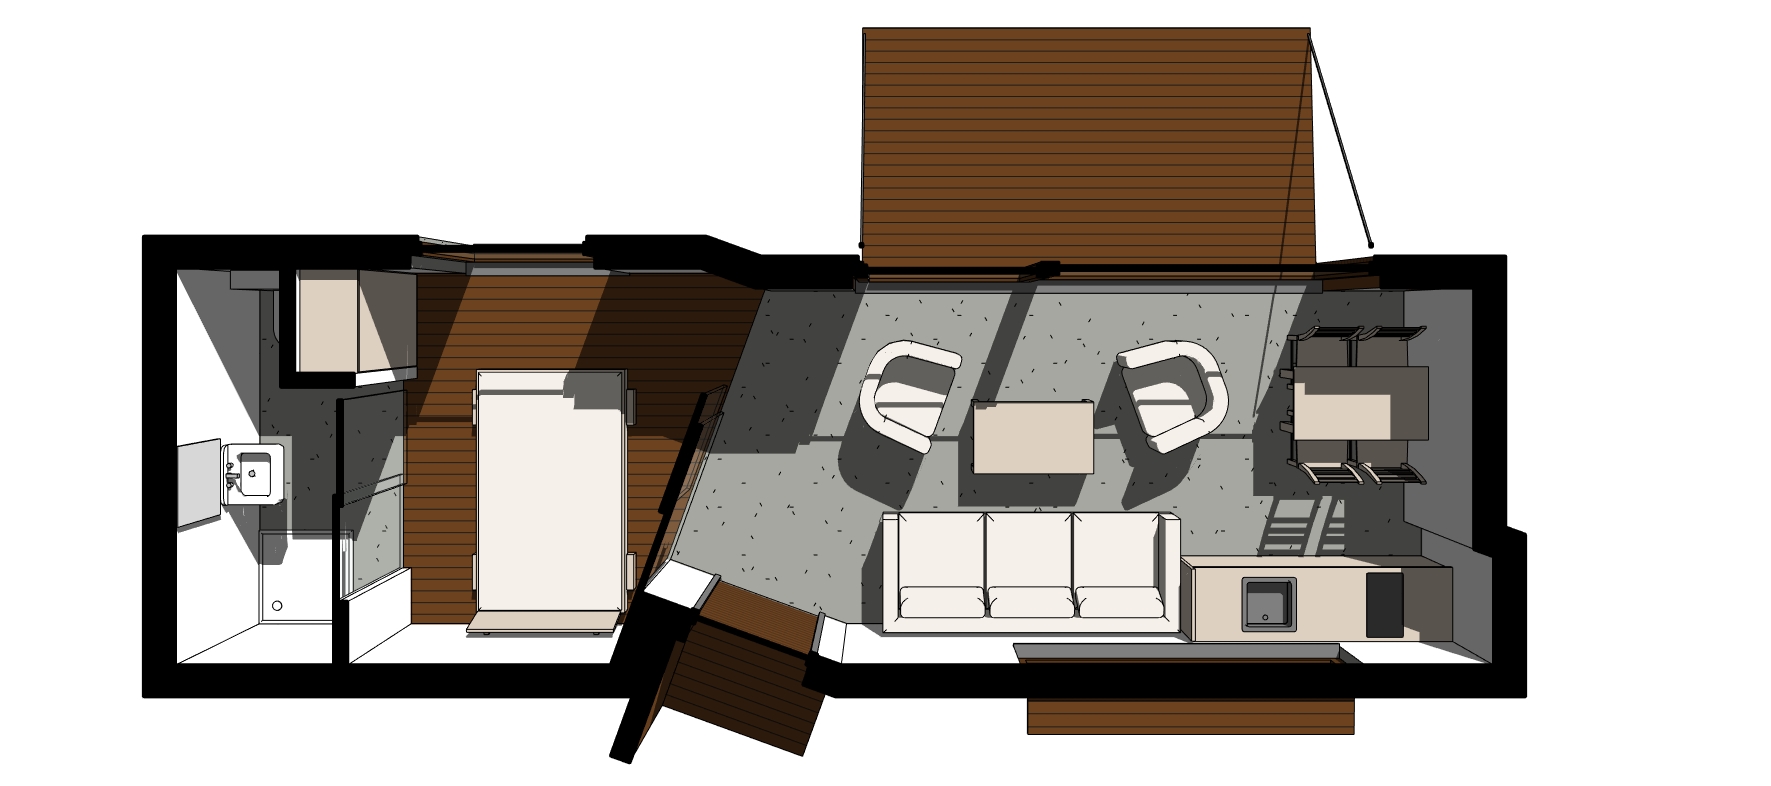 W malutkim domku znajdzie się miejsce do komfortowego życia dla dwóch osób, ale można też wykorzystać salon na dodatkowe miejsca do spania.